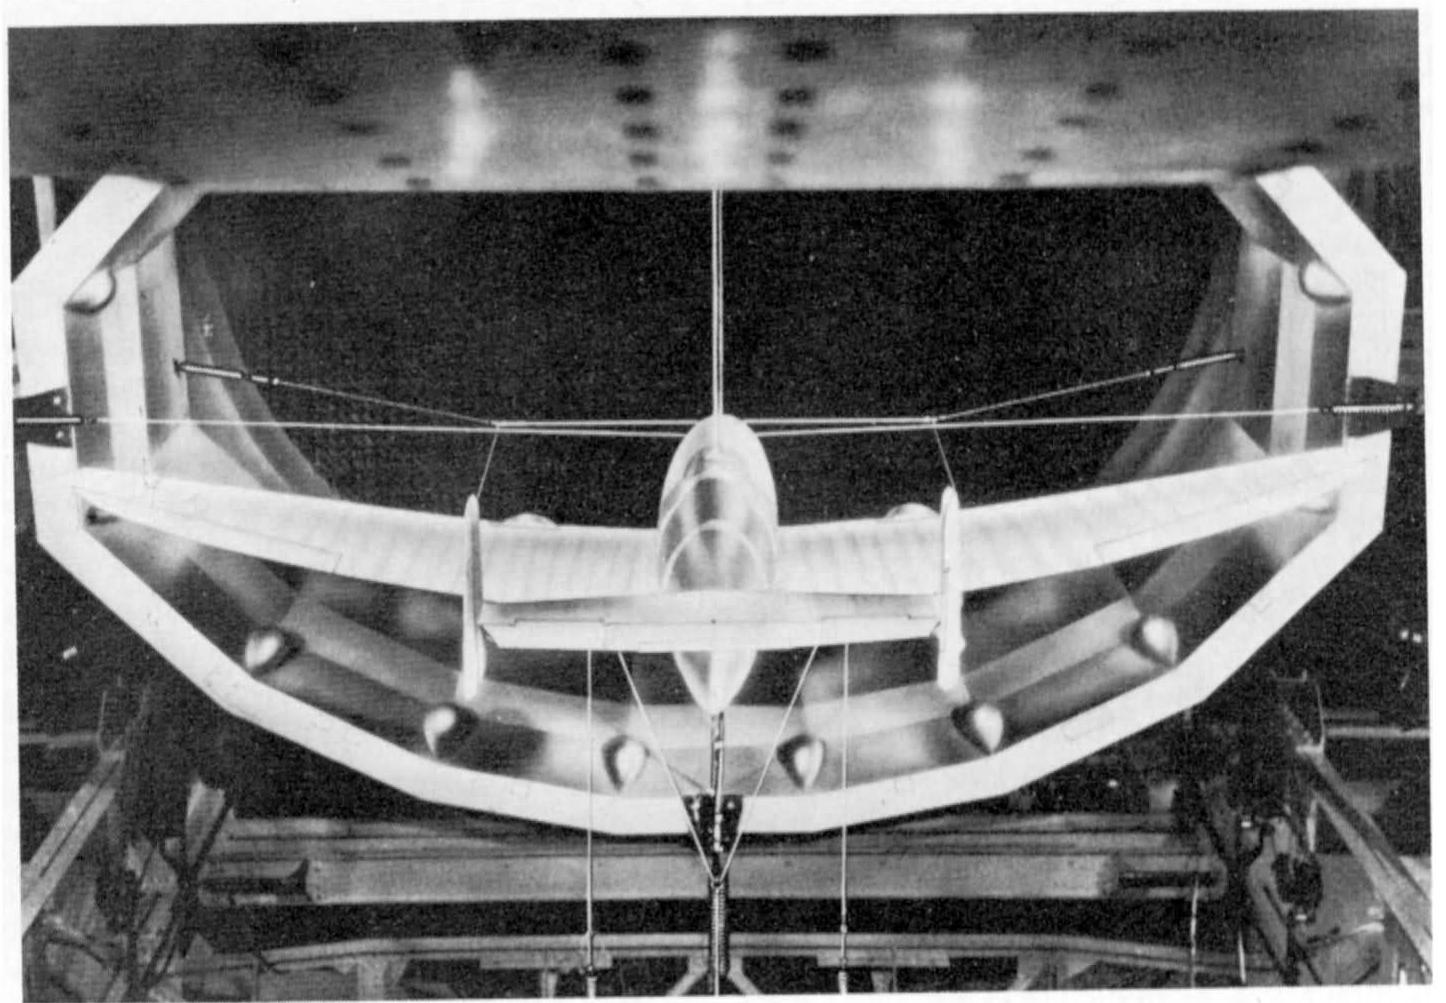 Рис. 3. Не 280 в аэродинамической трубе при измерениях колебаний крыла, 1941 год